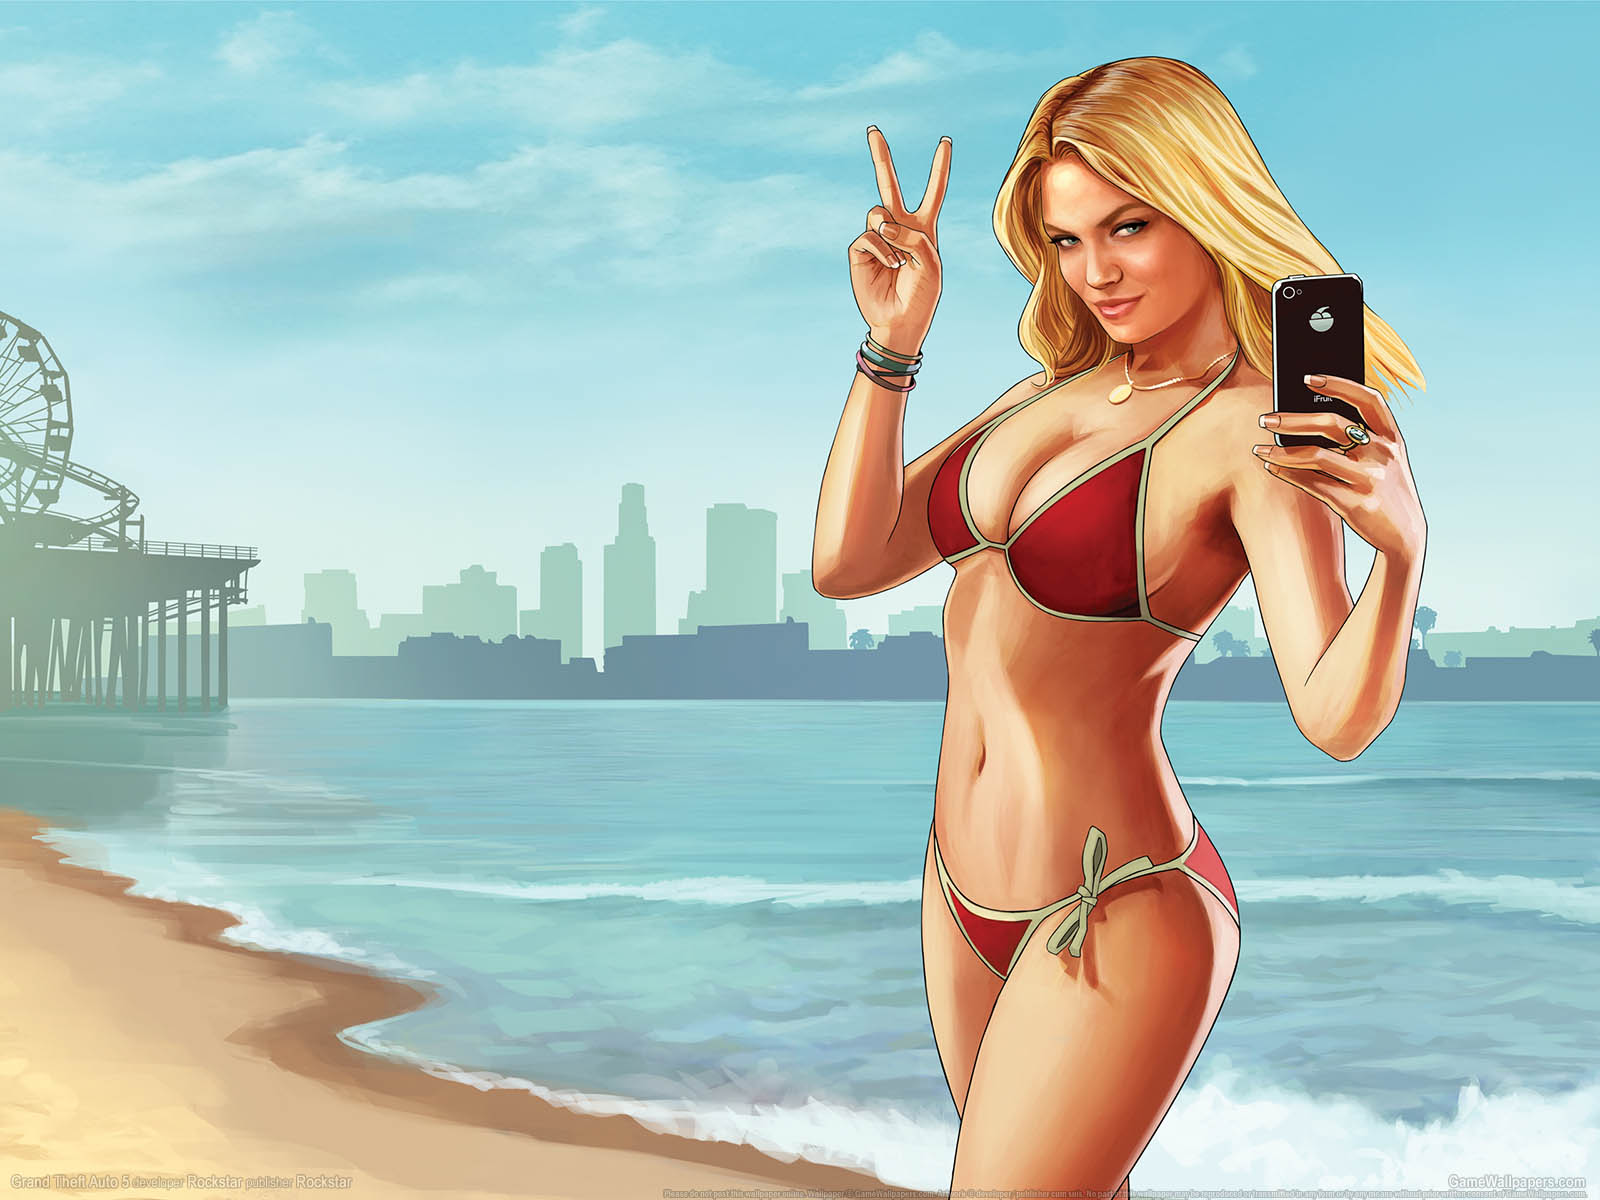 Grand Theft Auto 5 fond d'cran 01 1600x1200